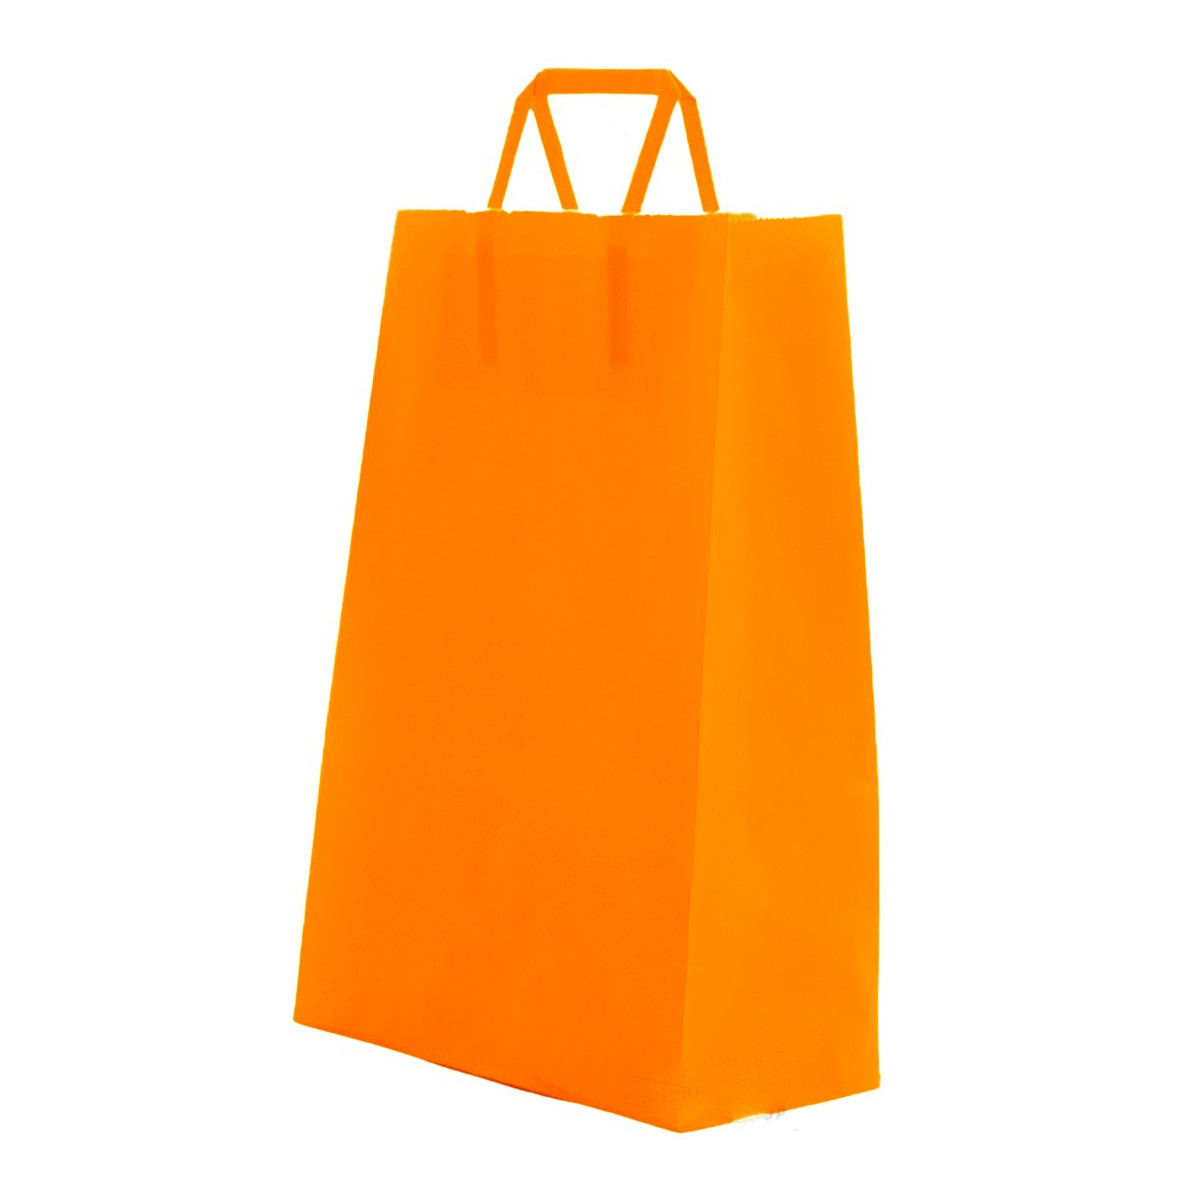 Sacchetto di carta di cellulosa arancio con manico piatto